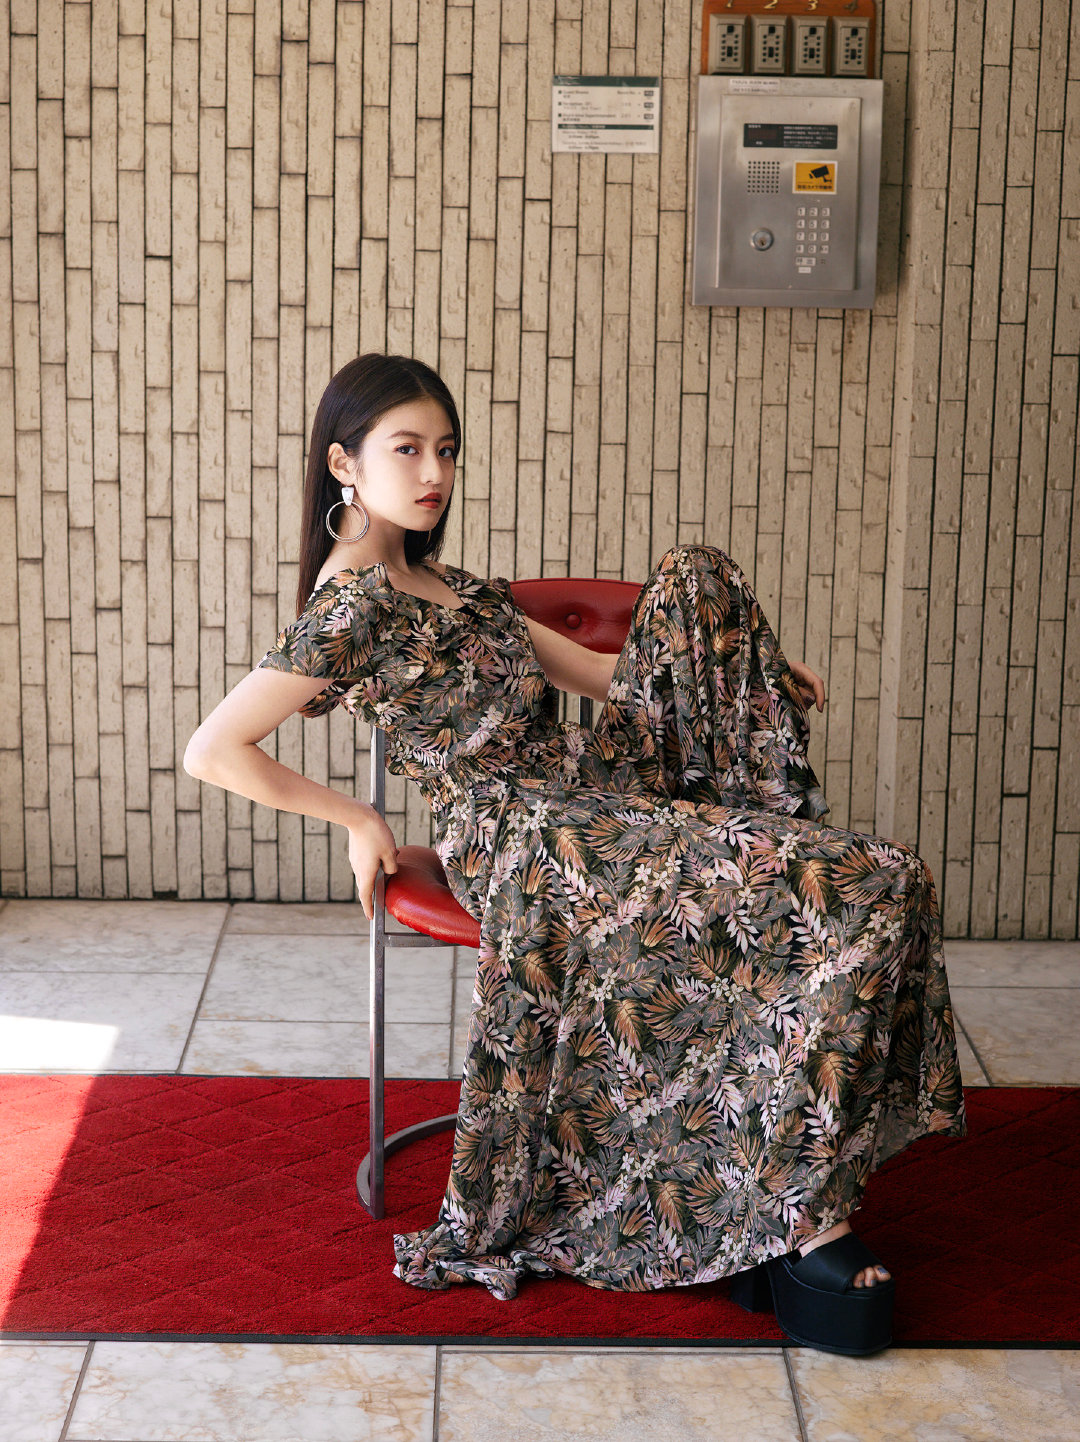 日本品牌EMODA找来日本女演员今田美樱拍摄2019春夏季LOOKBOOK